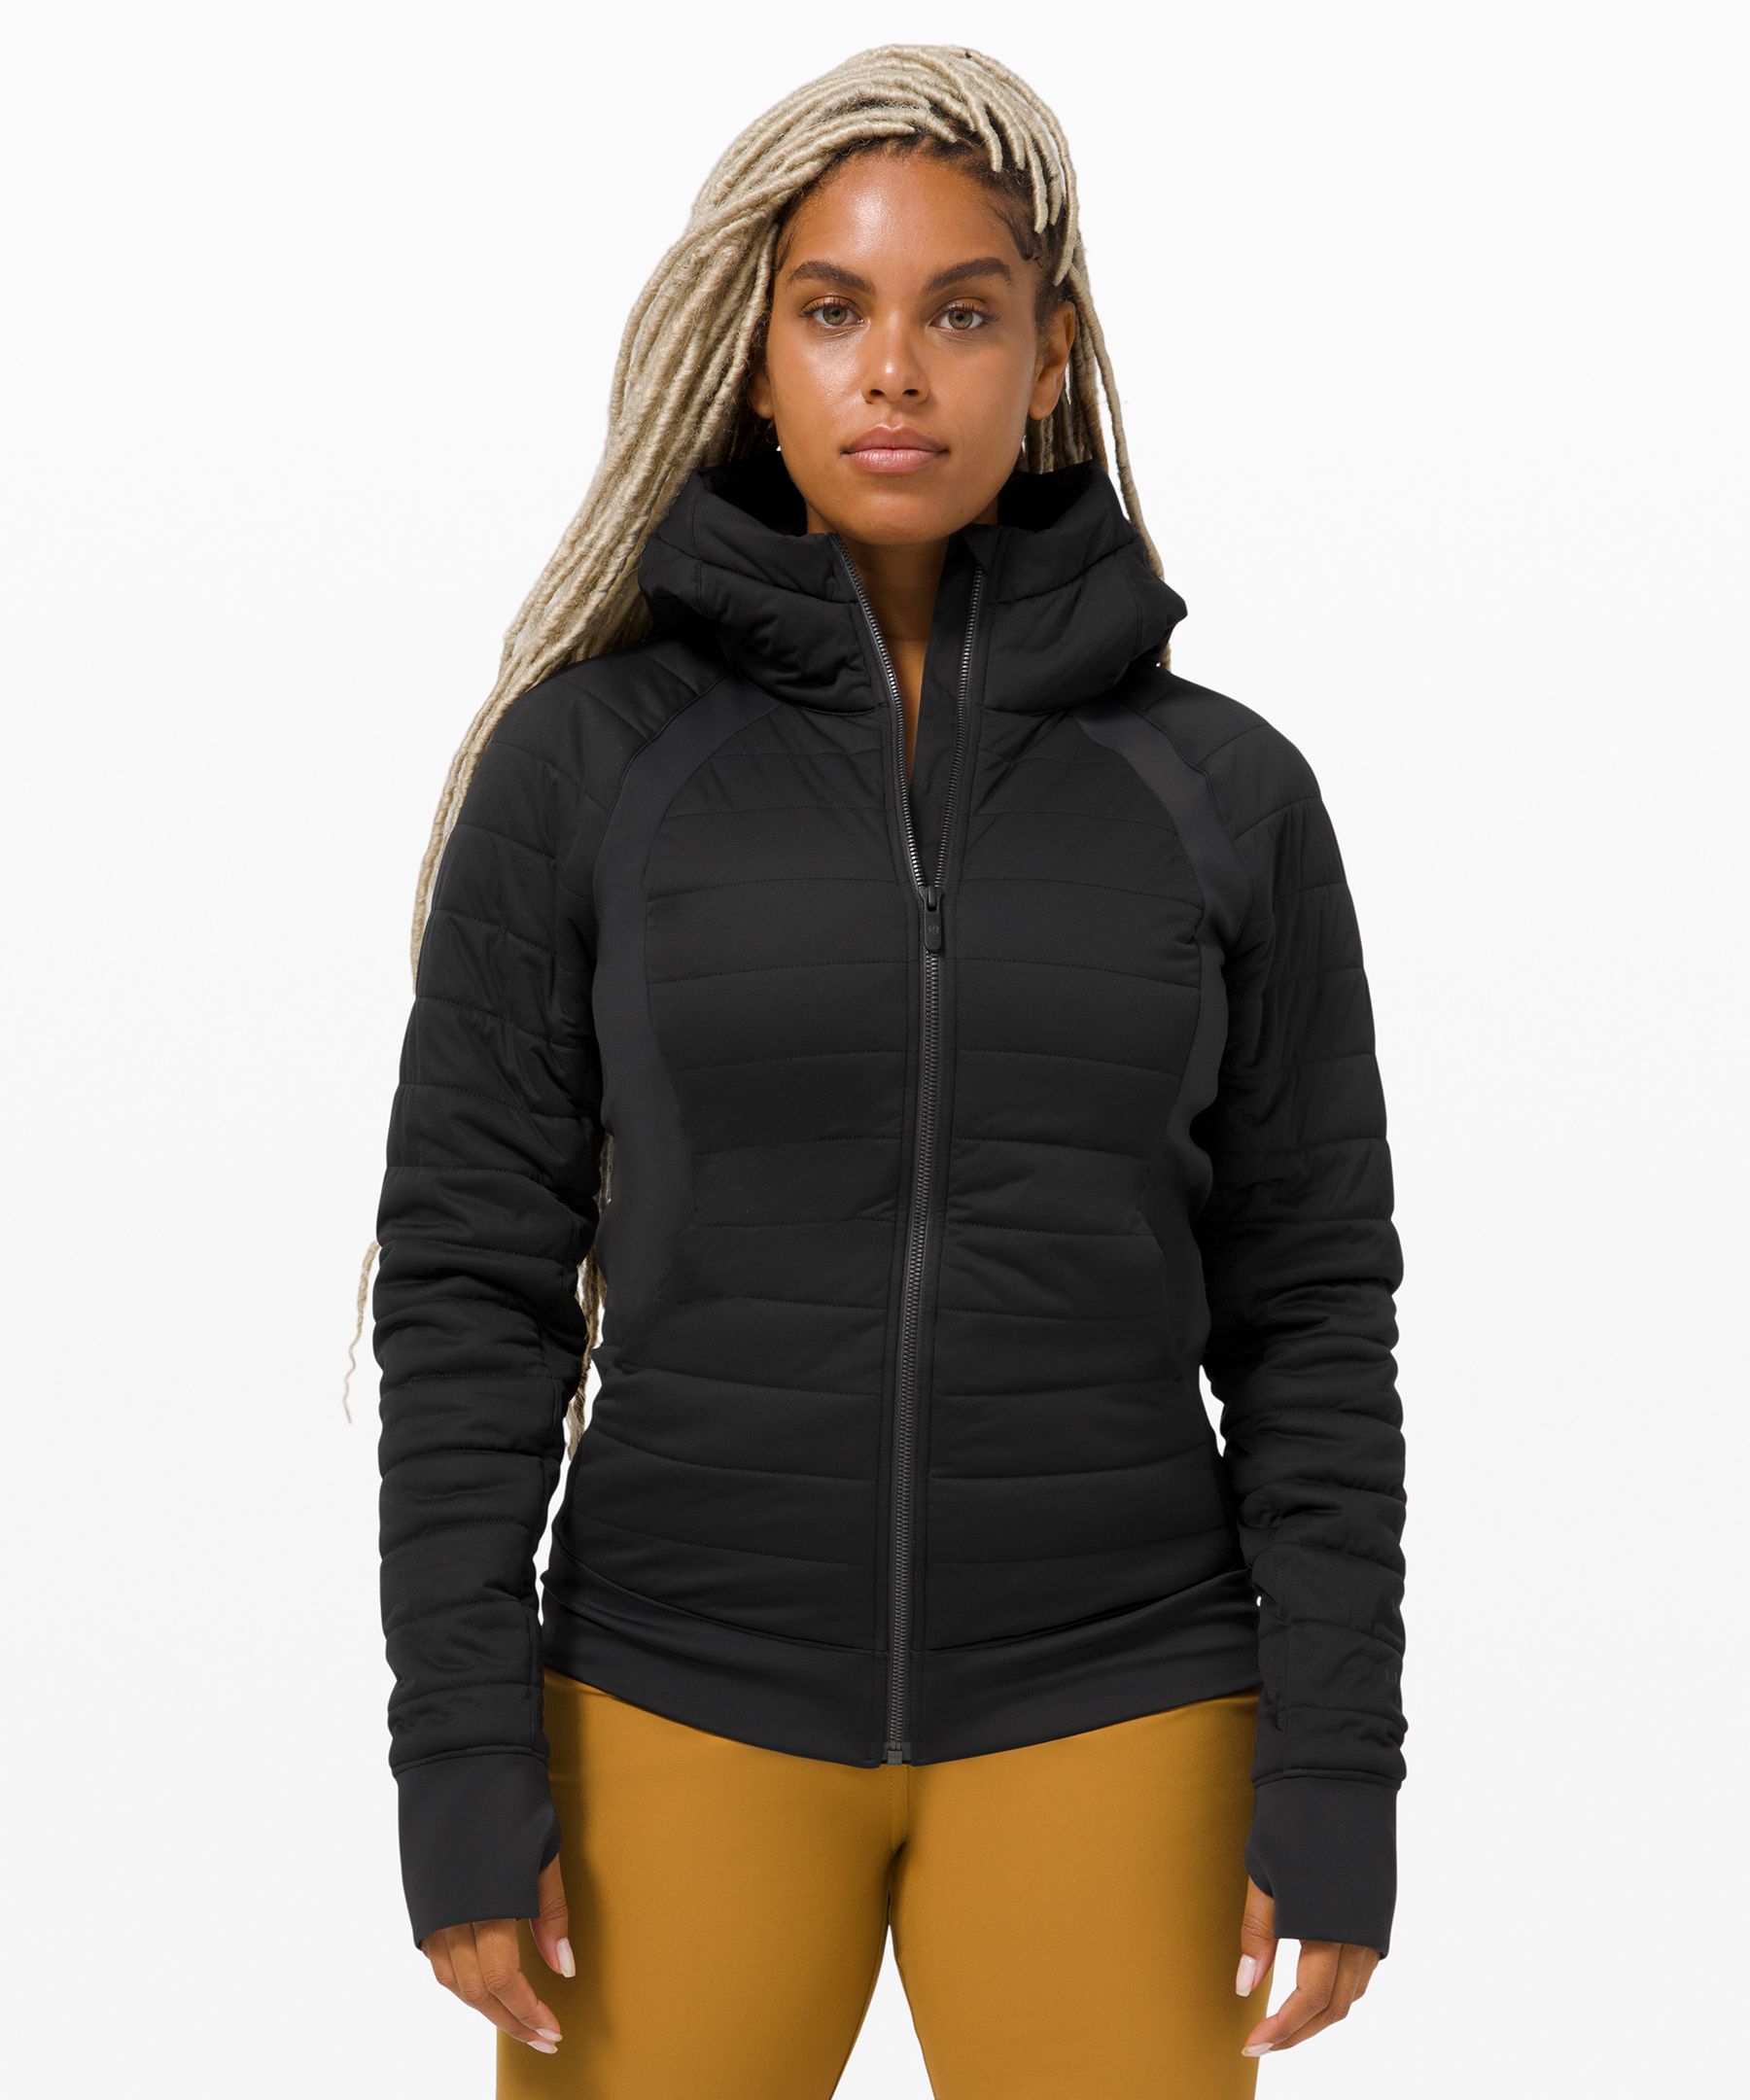 lululemon black zip up jacket